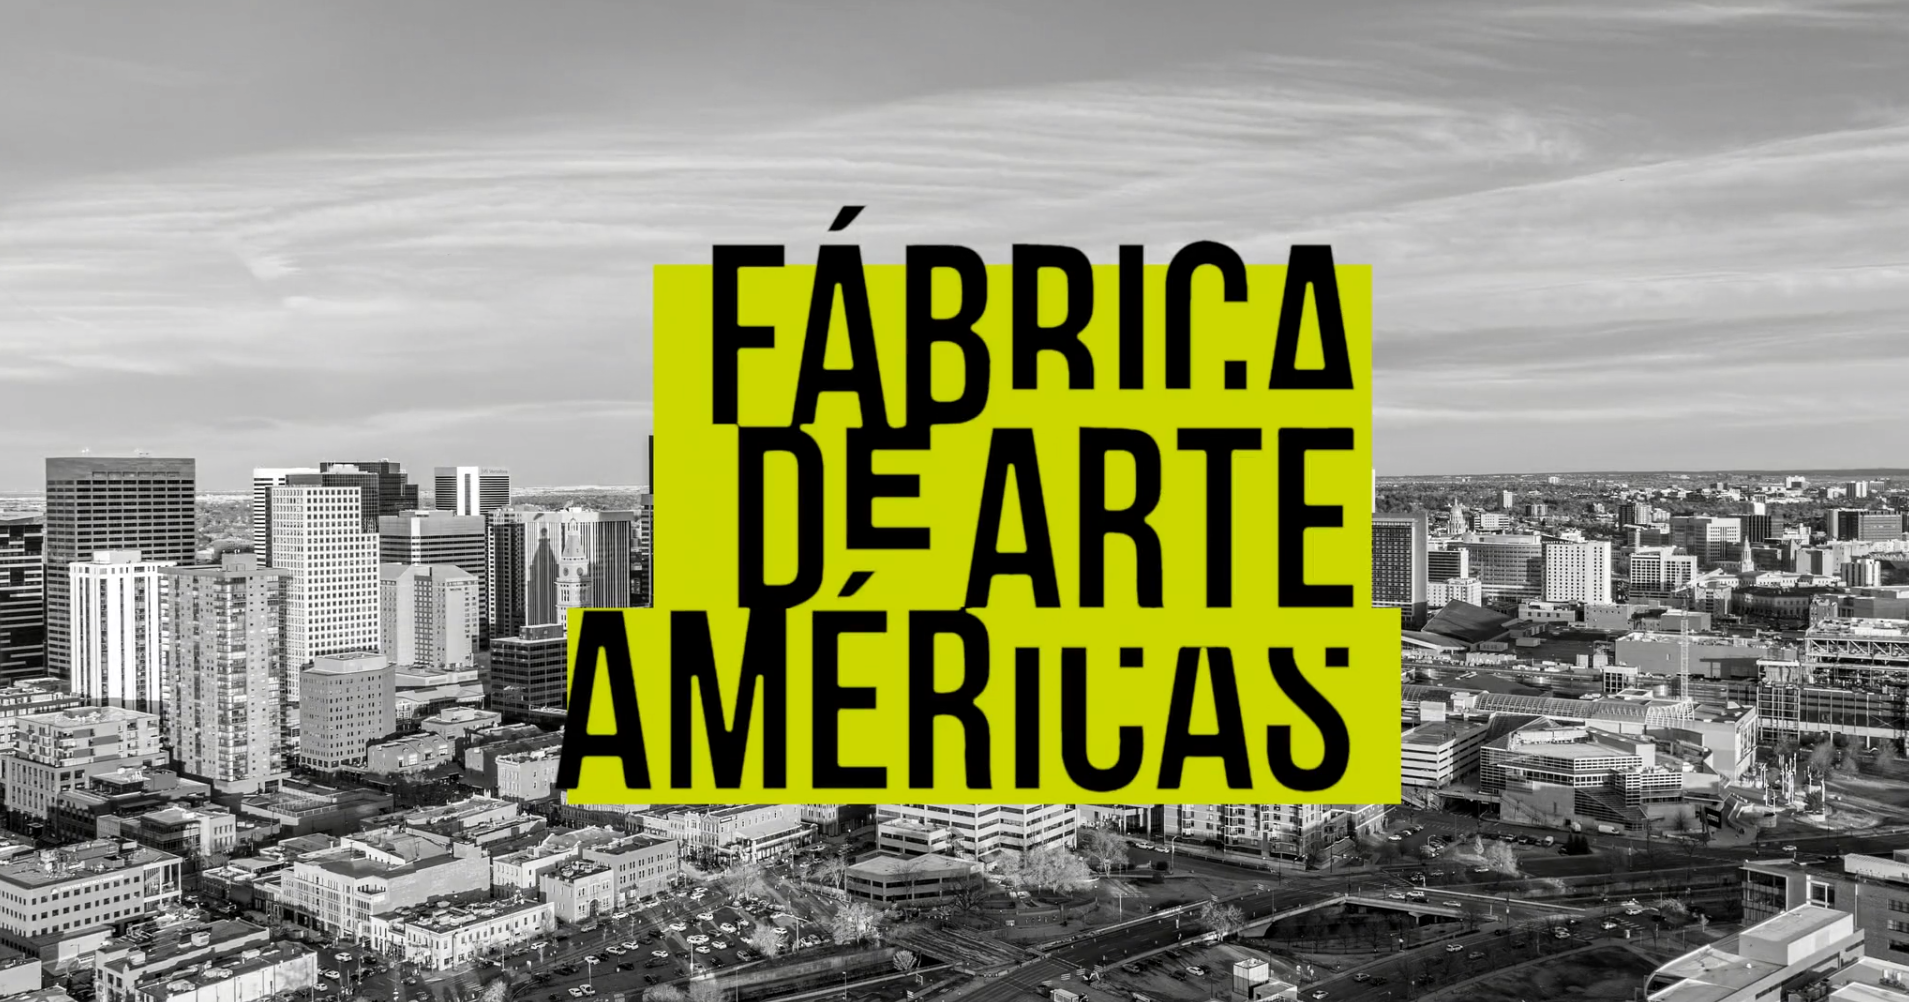 Fabrica de Arte Americas title slide